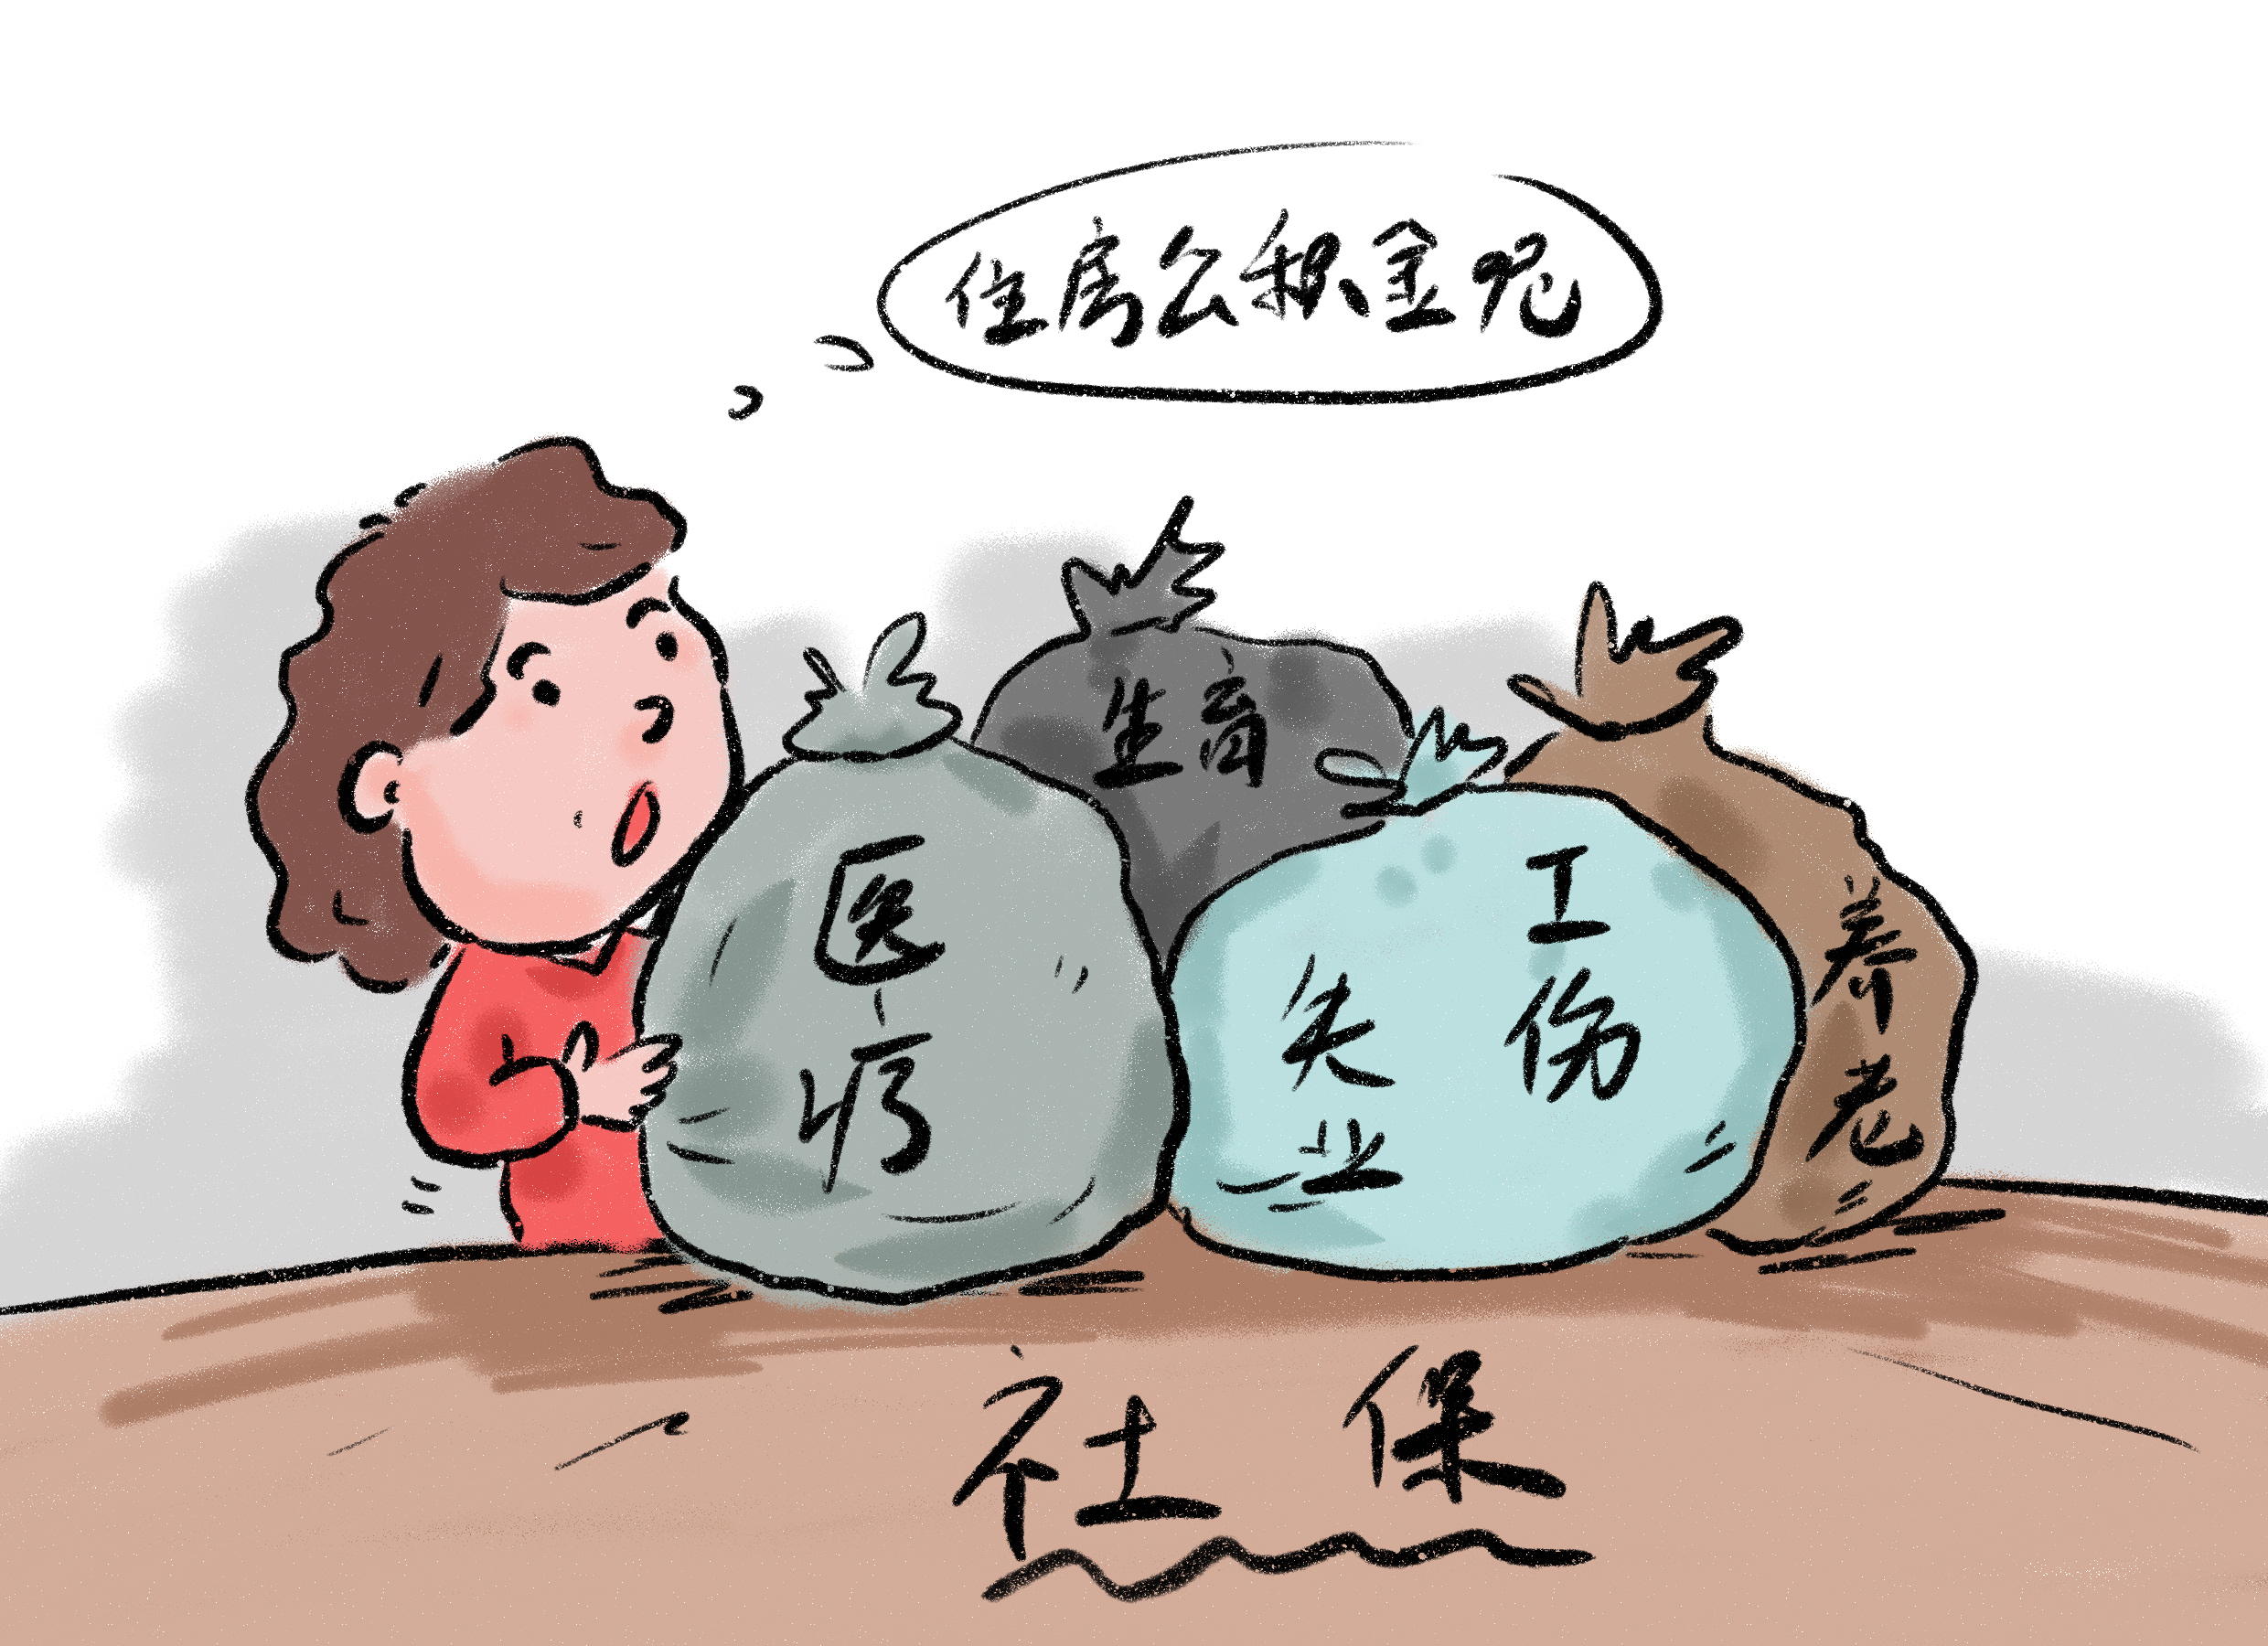 北京个人社保代理可以让全职妈妈轻松顾家；